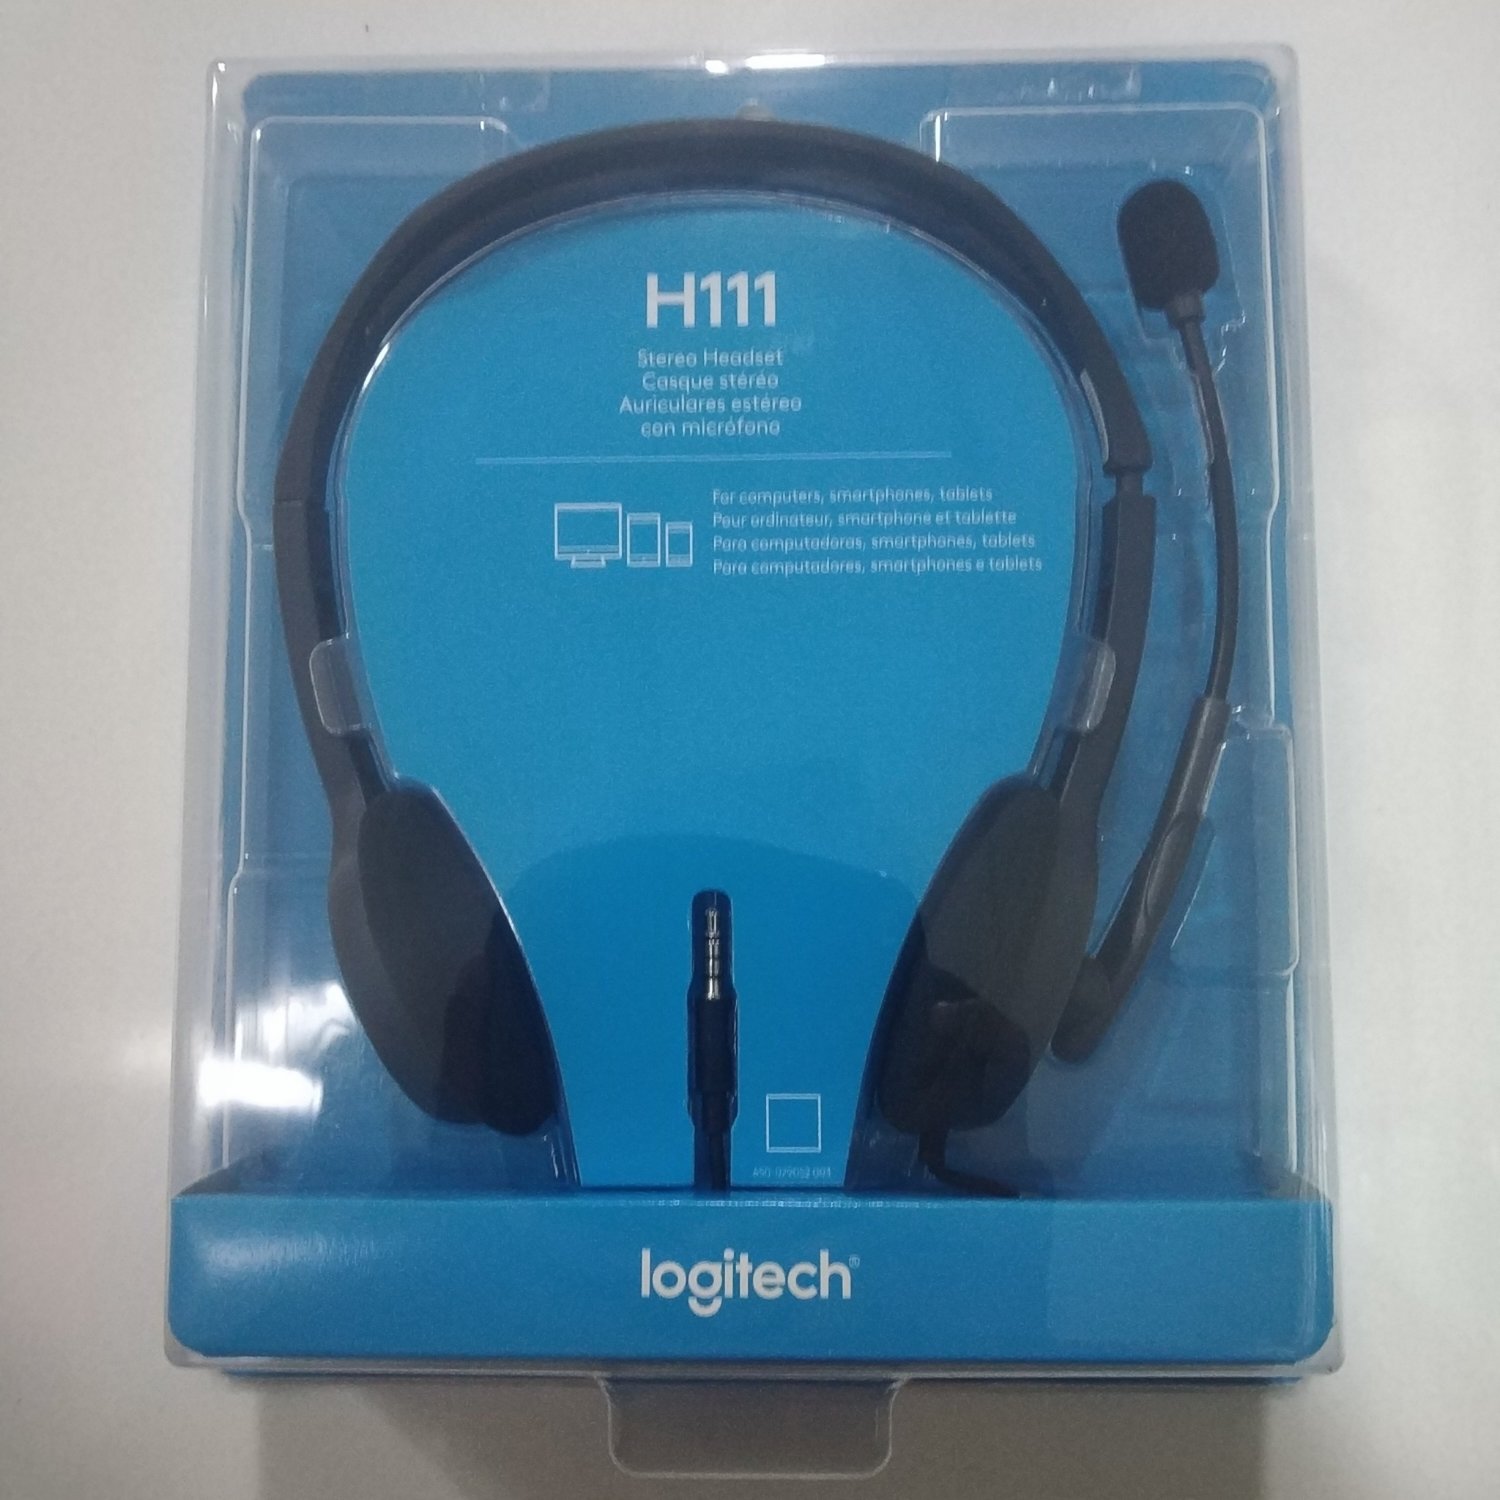 Rs.649 – Logitech H111 Stereo Headset – LT Online Store